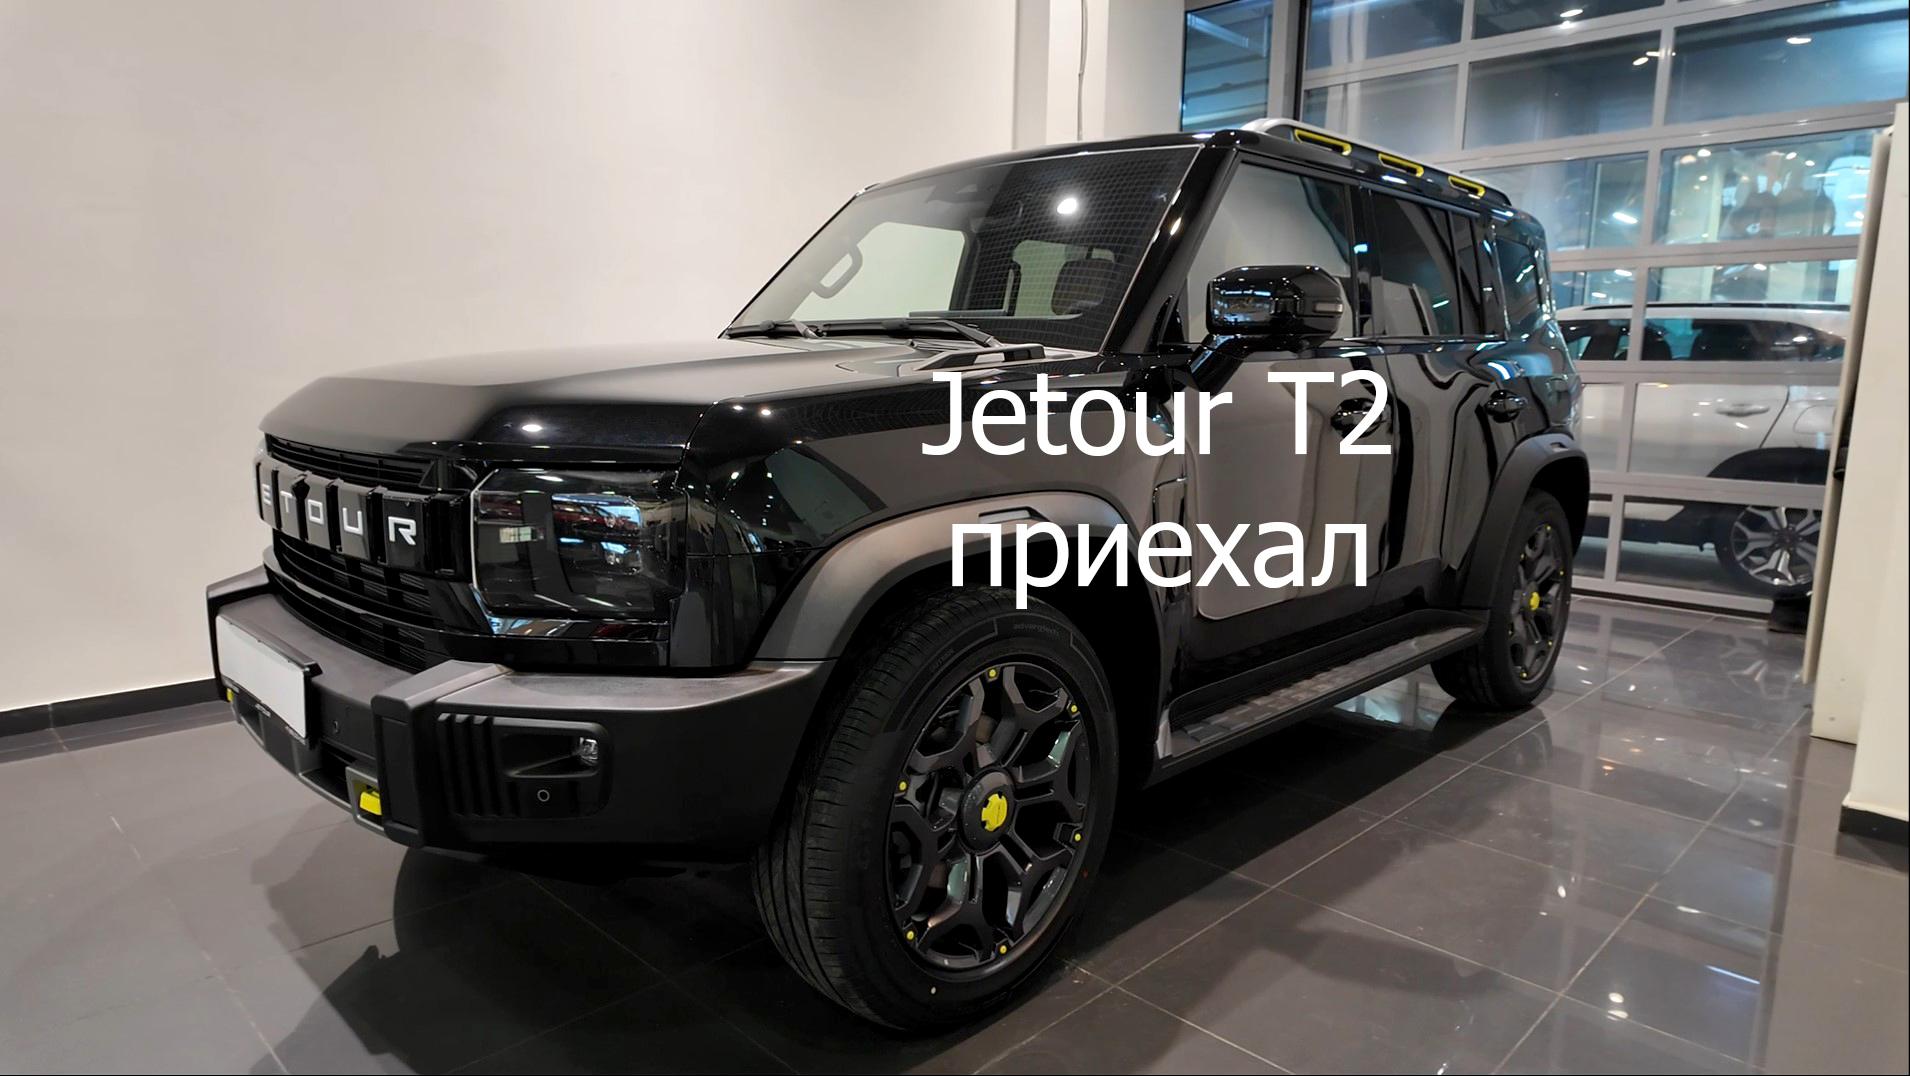 Jetour T2 уже в официальной продаже. Небольшой обзор.